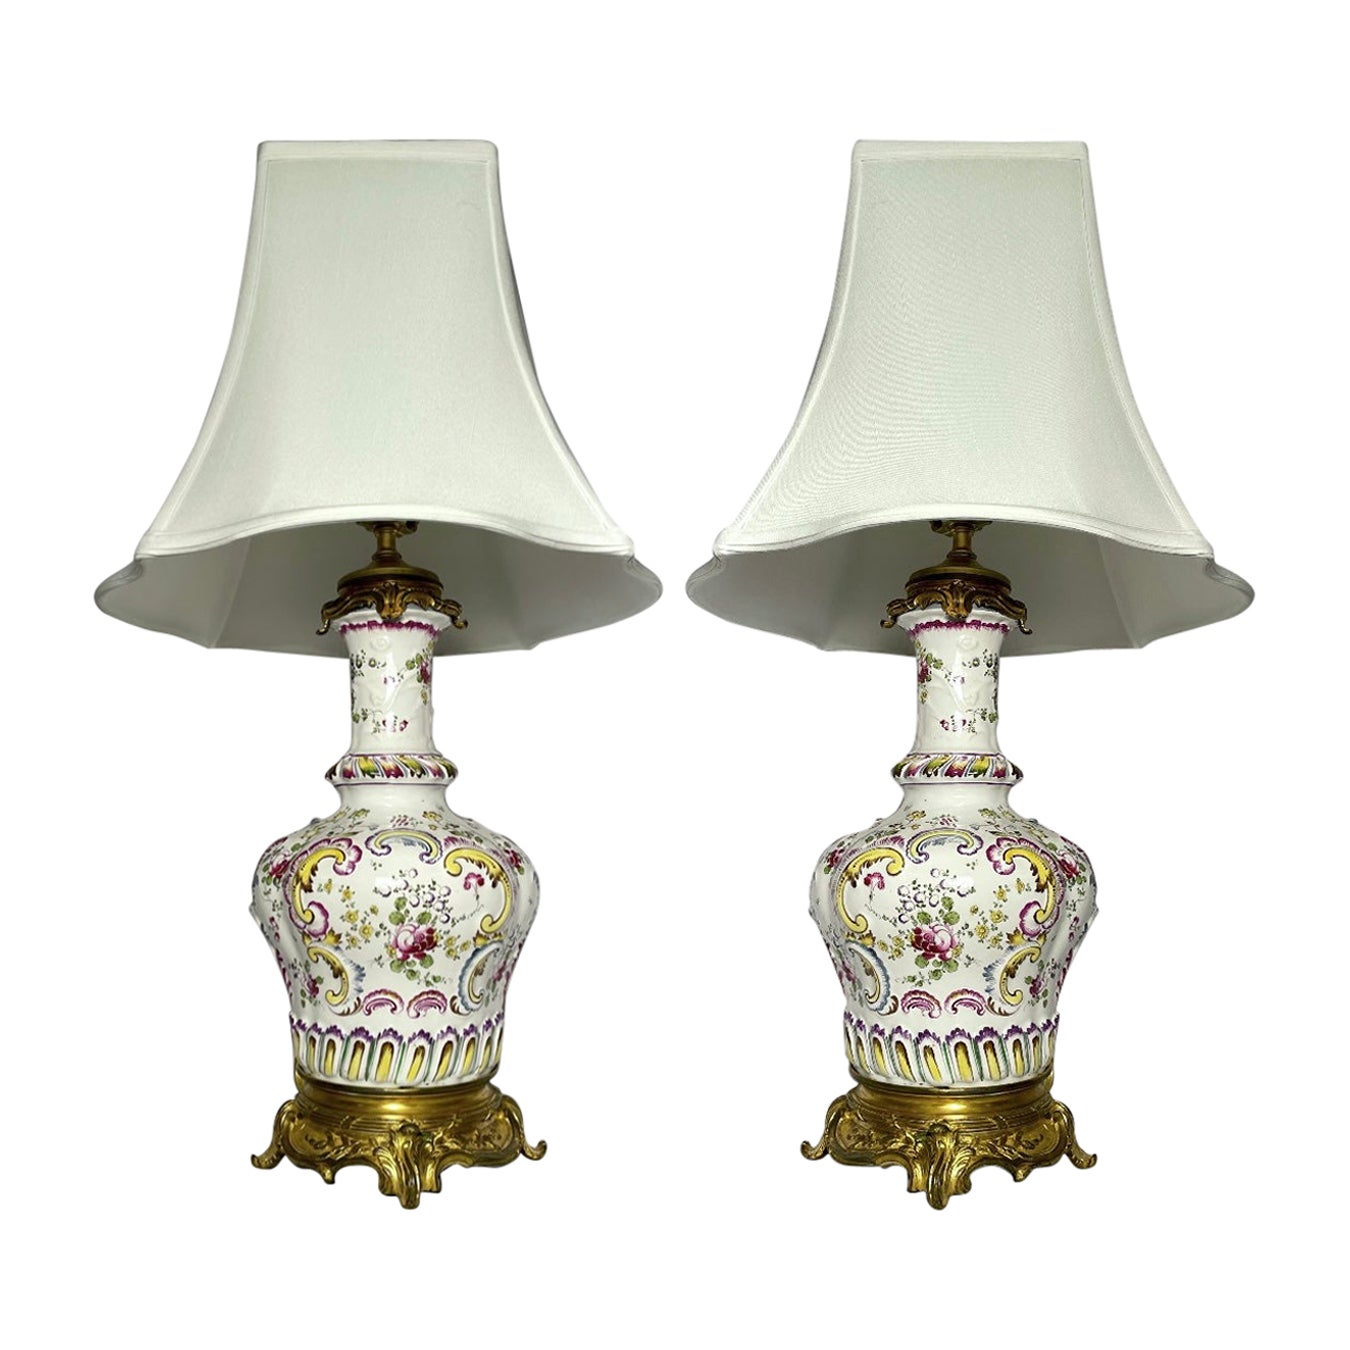 Lampes françaises anciennes en porcelaine et bronze doré montées, vers 1890.